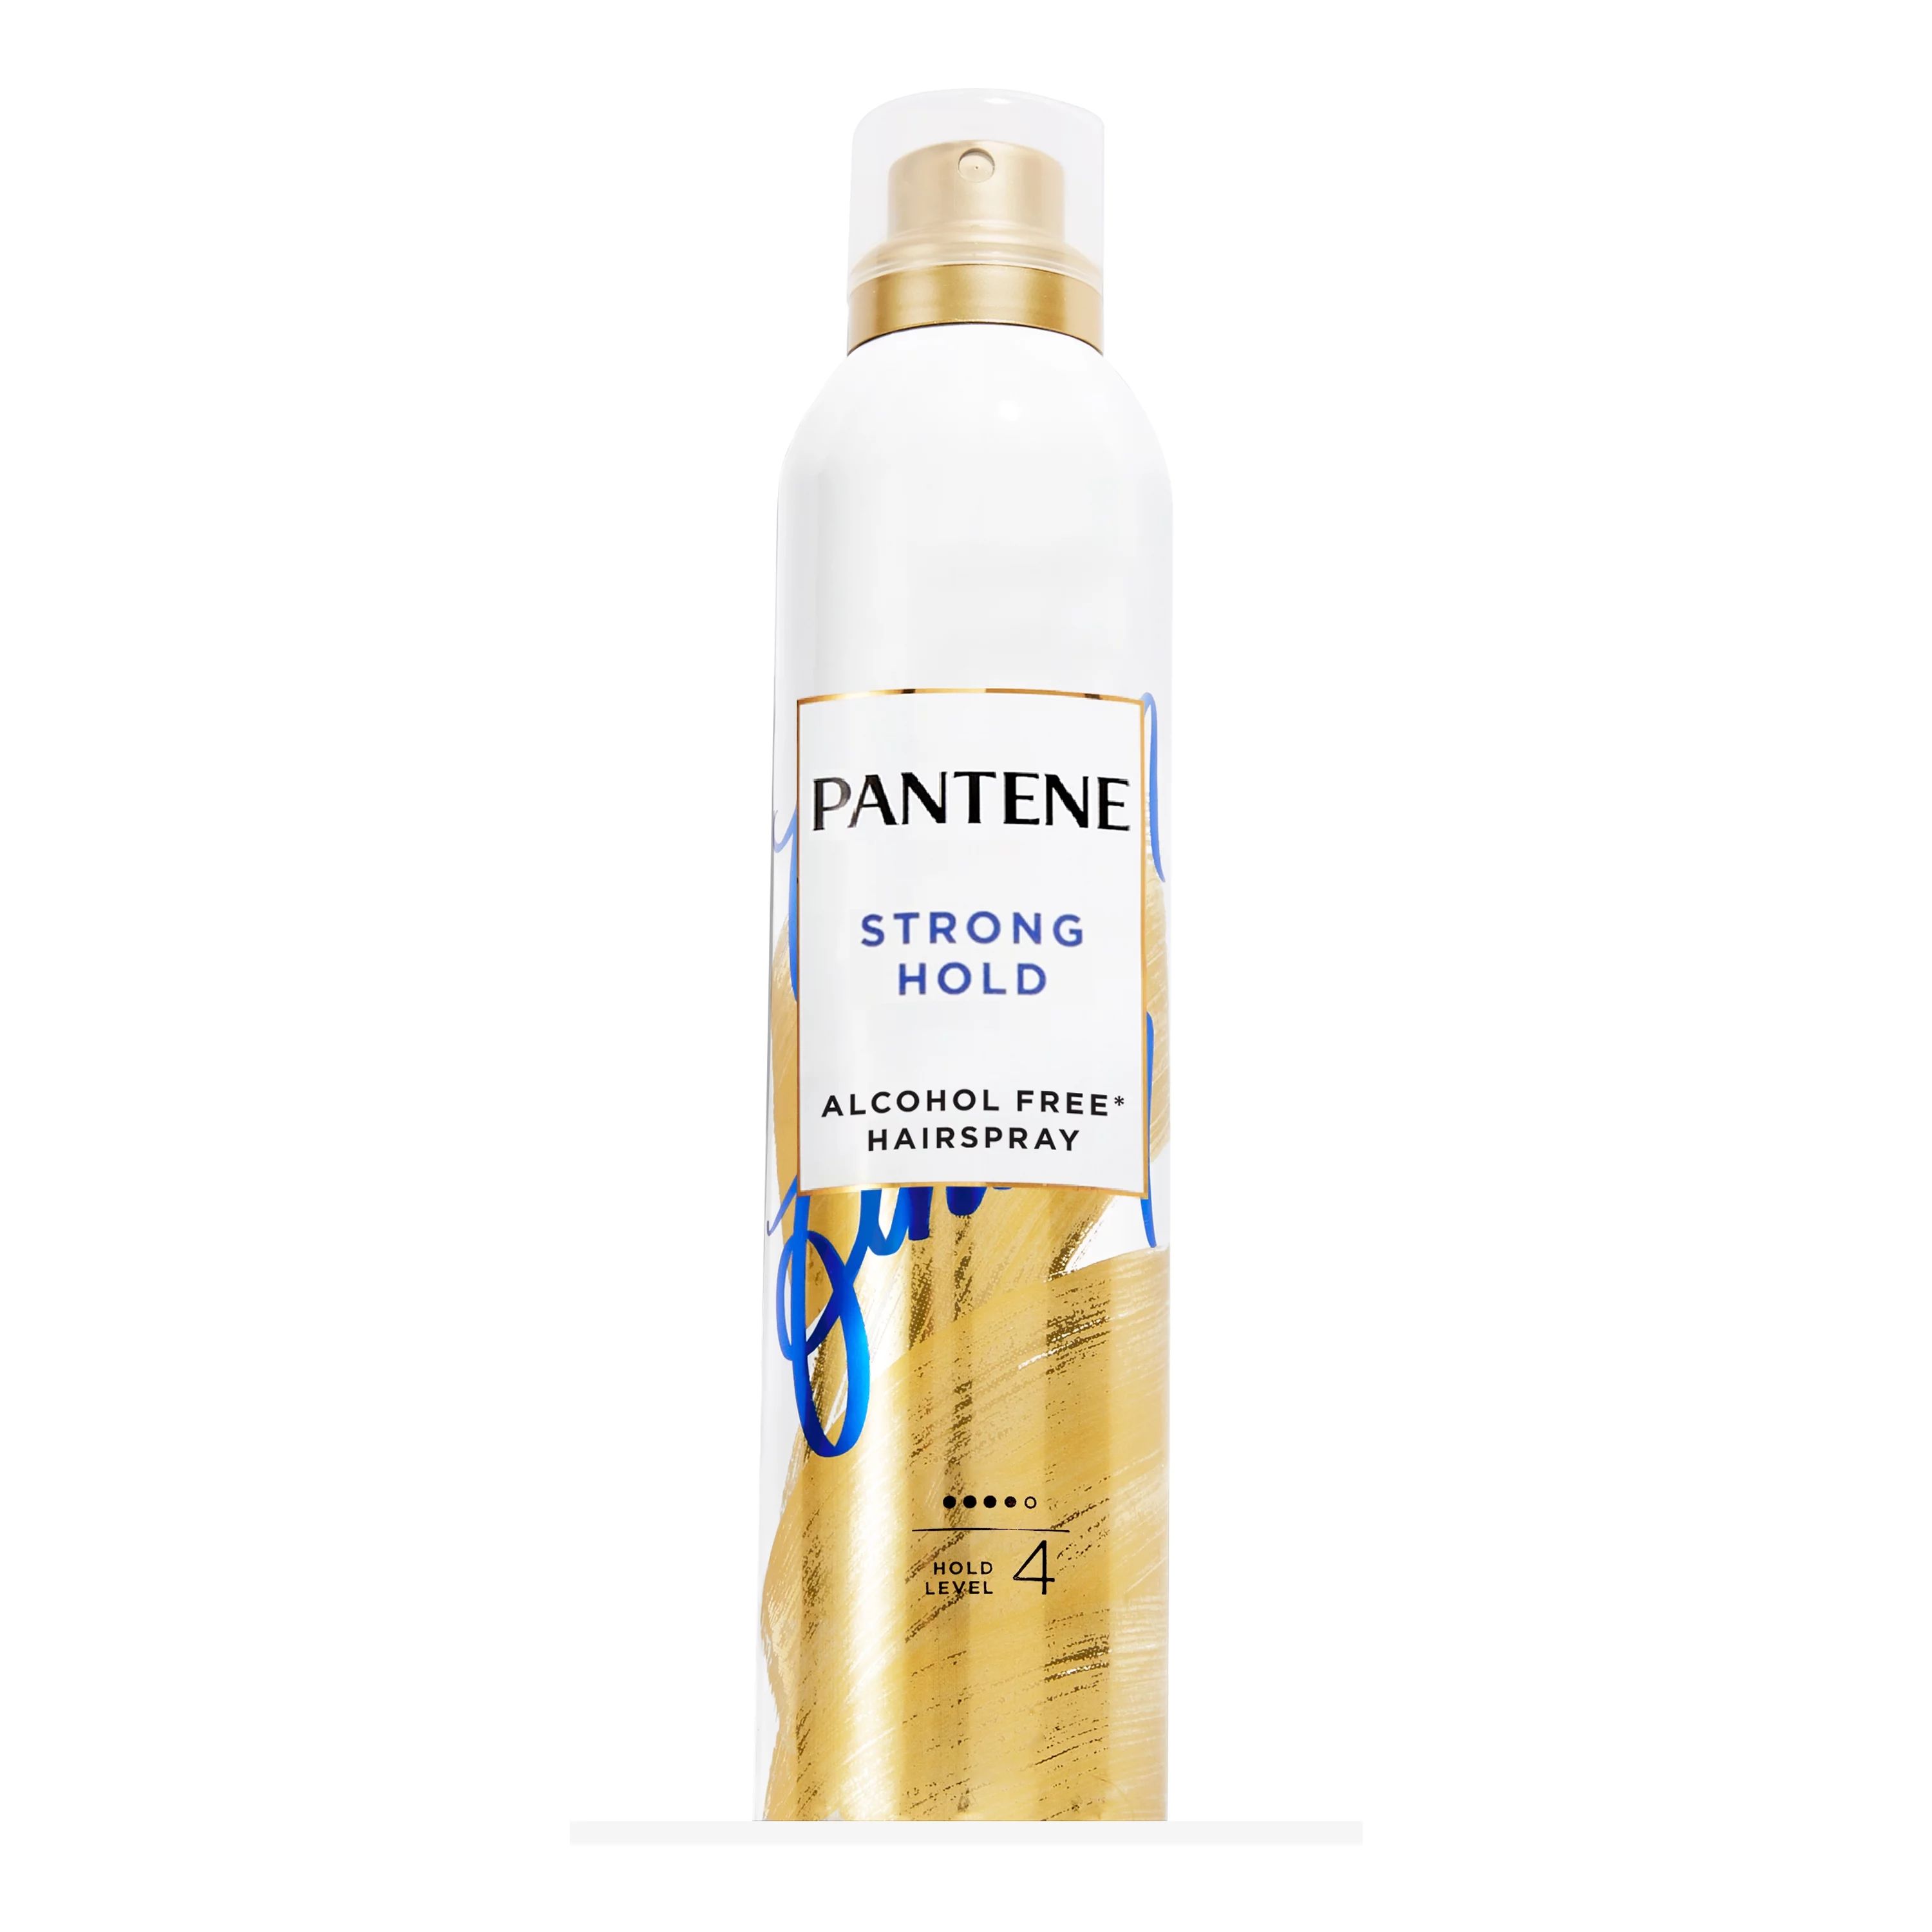 Pantene Pro-V Strong Hold Hairspray, Level 4, Alcohol Free*, 7.0 oz | Walmart (US)